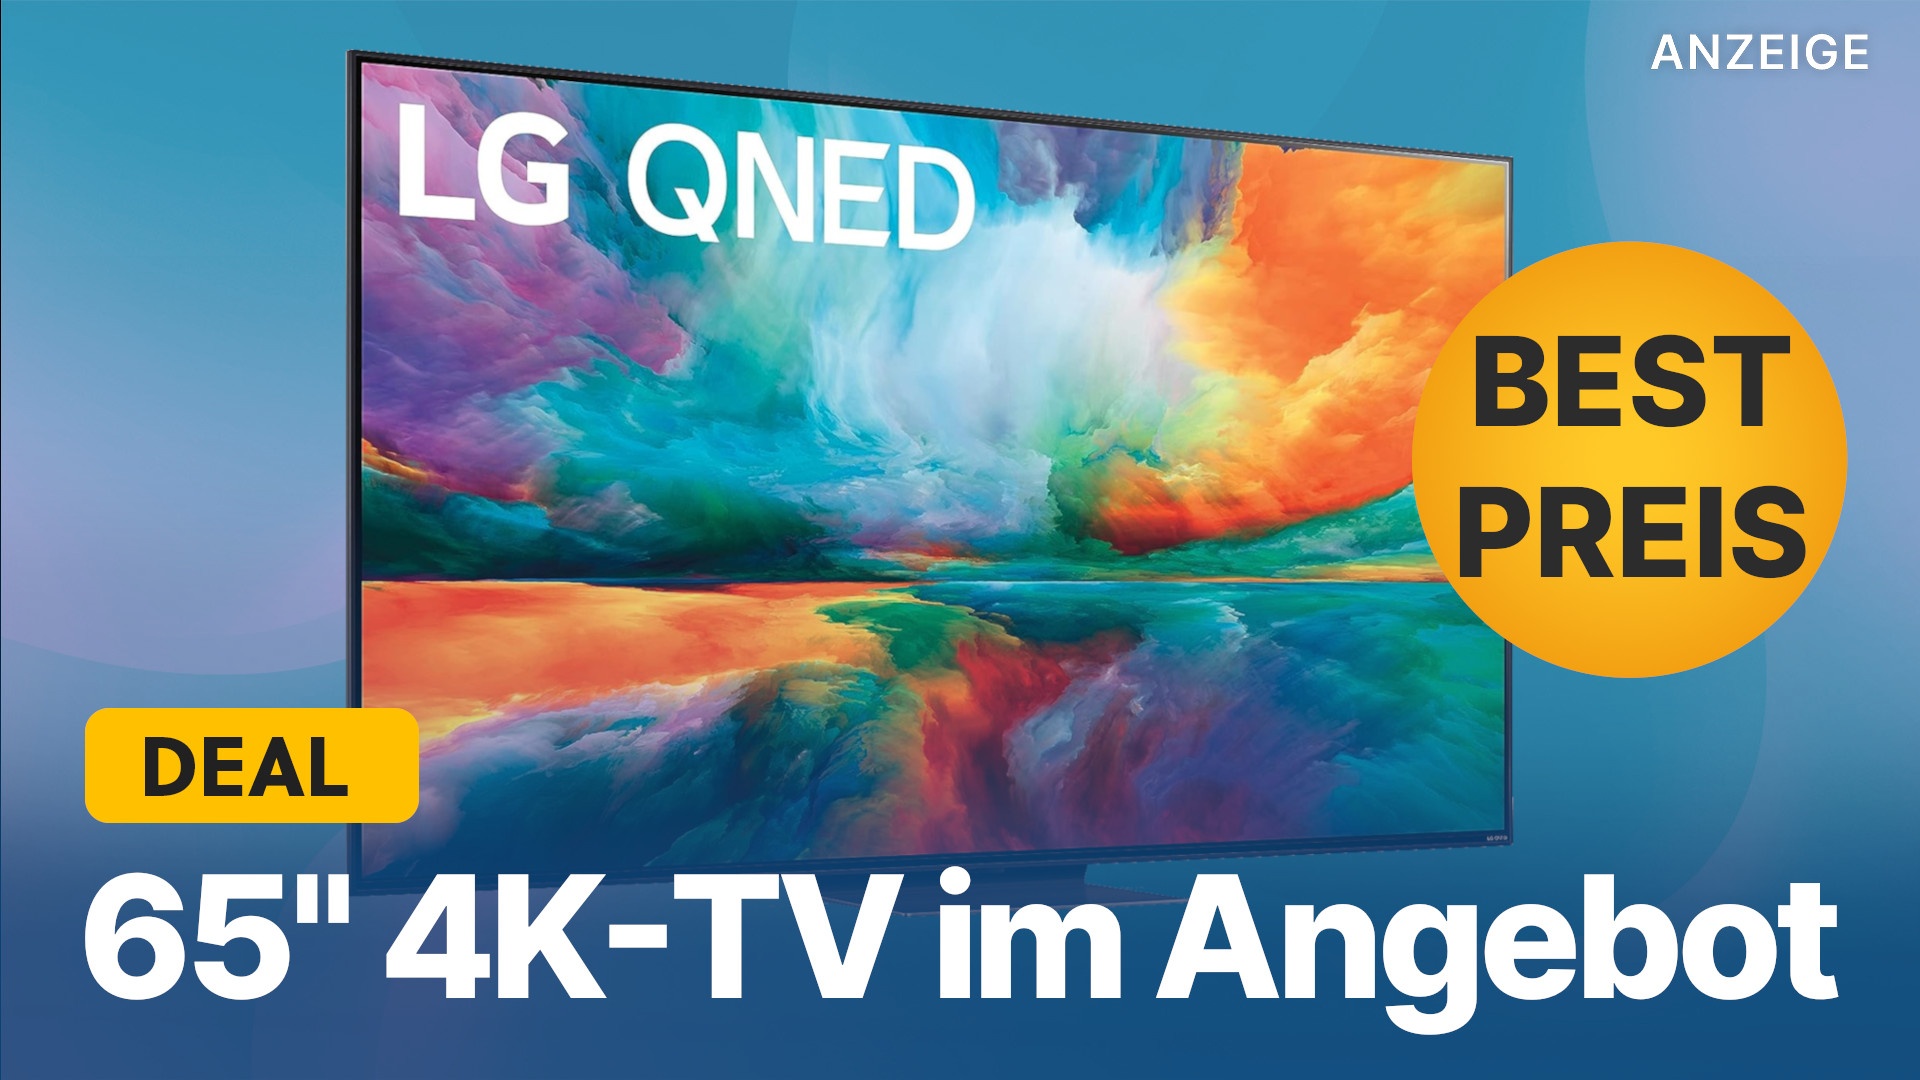 Nowy 65-calowy telewizor LG 4K 120 Hz jest w sprzedaży w Amazon